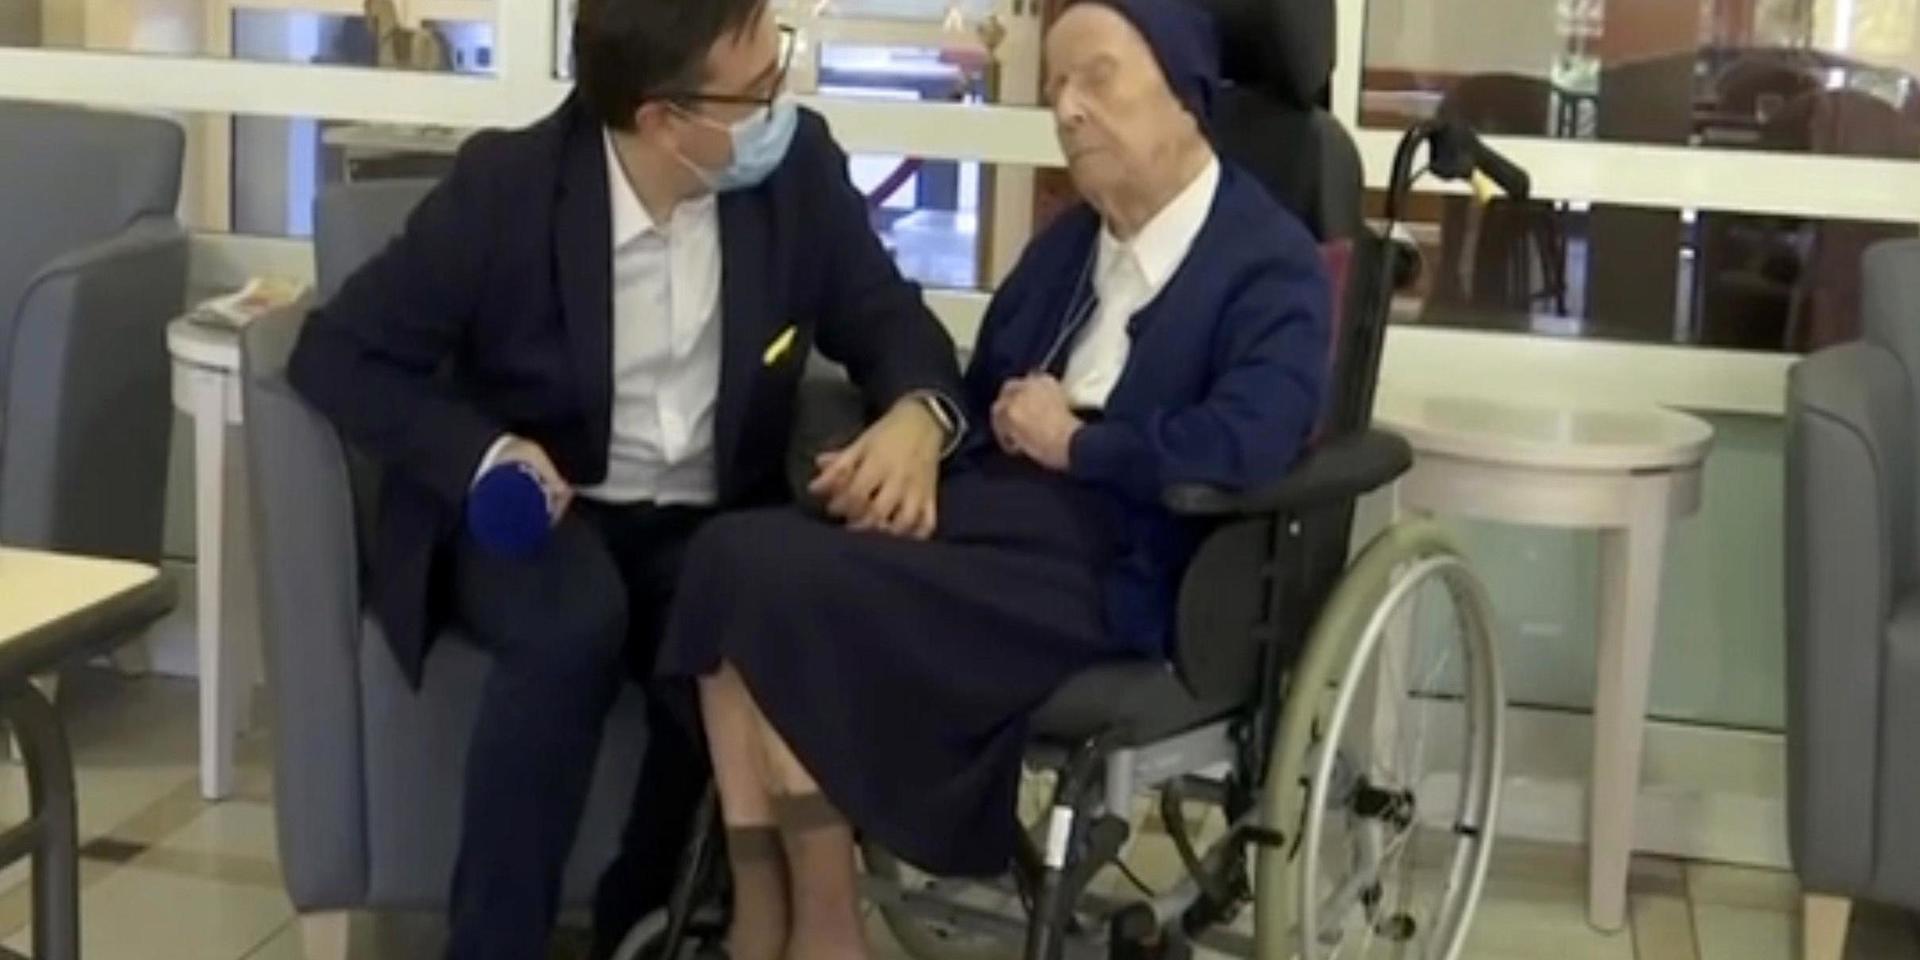 Syster André är Europas äldsta levande person och har överlevt covid-19. På torsdag firar hon sin 117:e födelsedag.